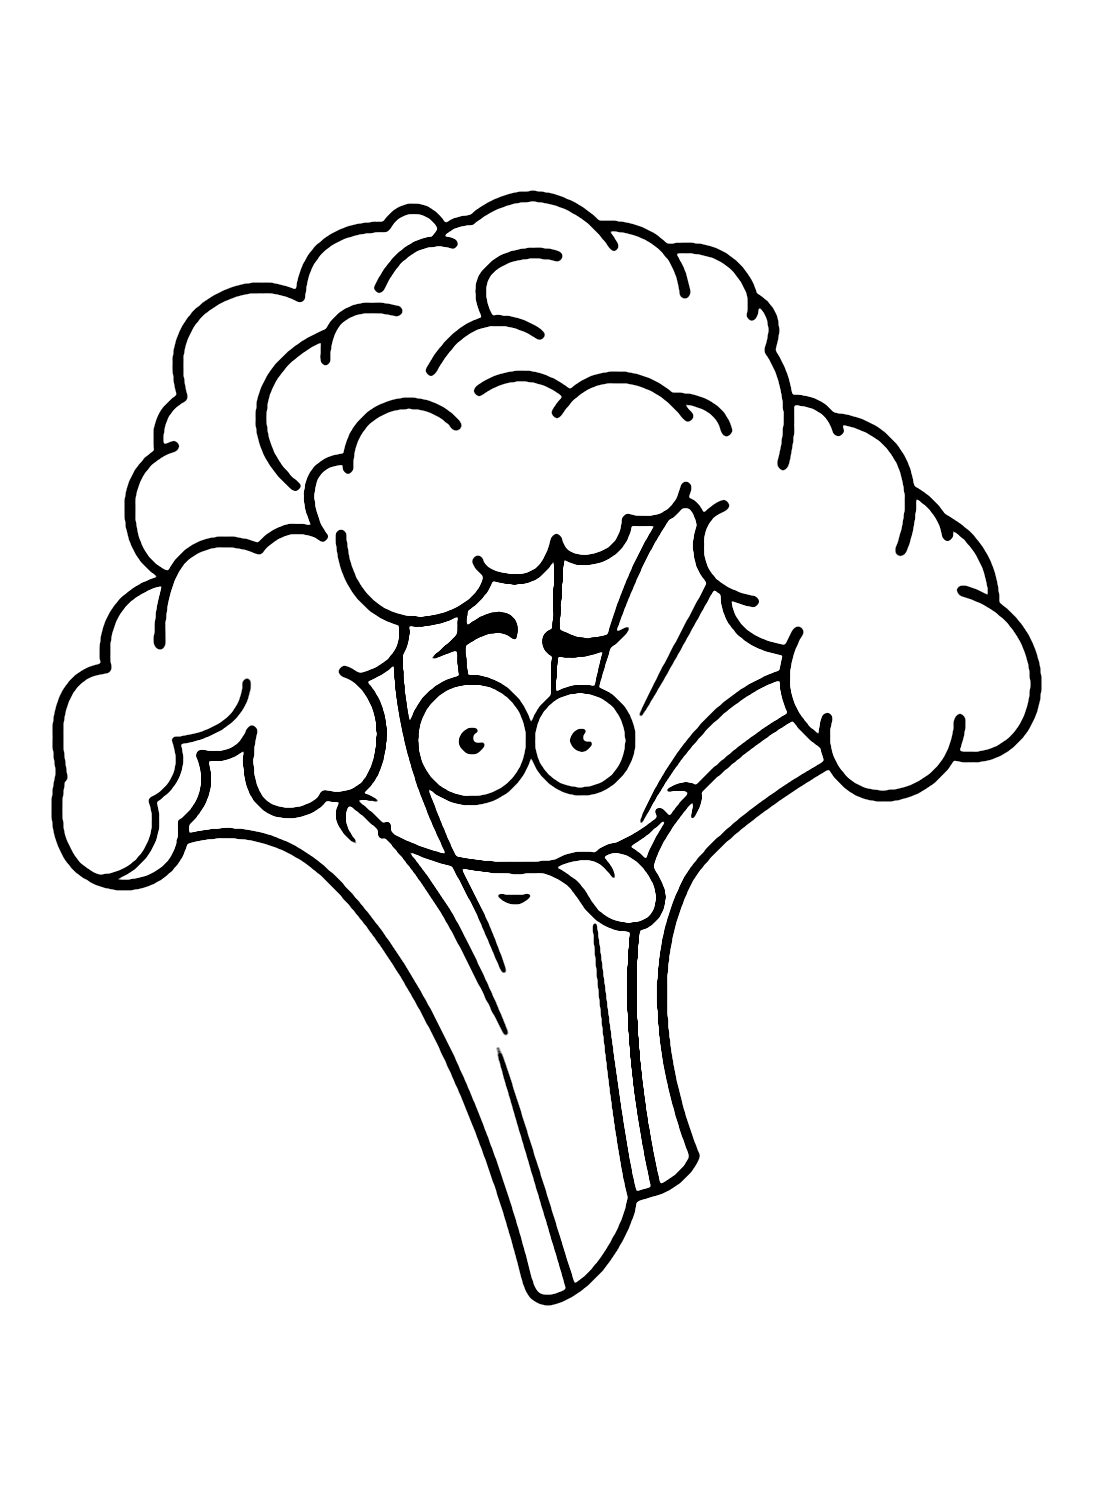 Divertente cartone animato di broccoli di Broccoli